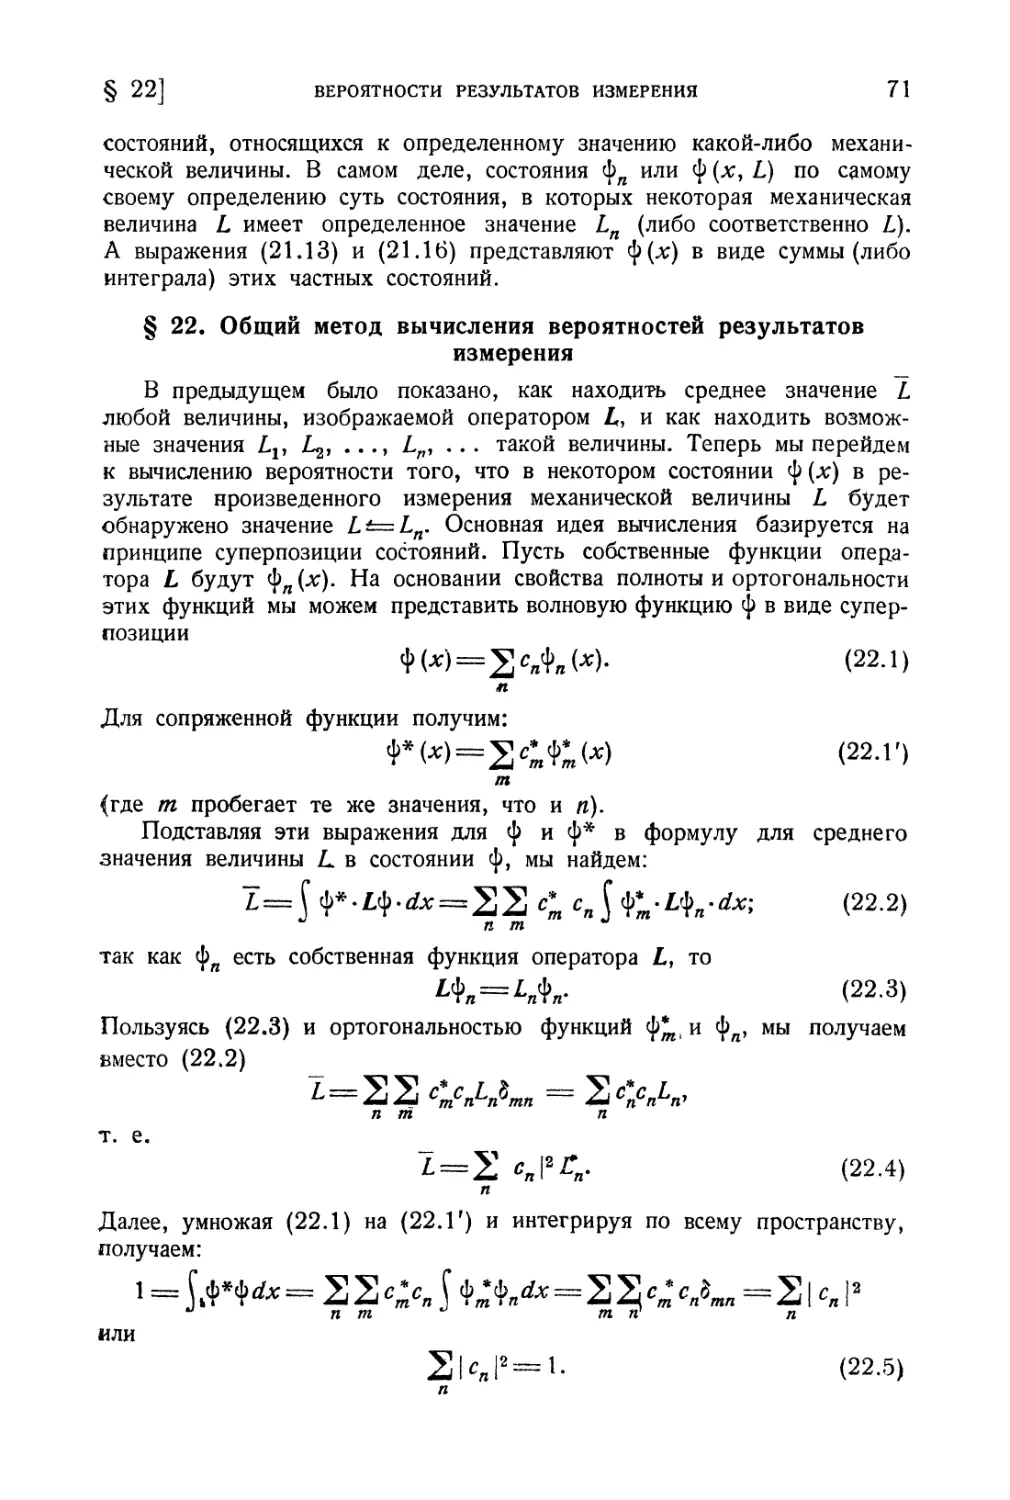 § 22. Общий метод вычисления вероятностей результатов измерения